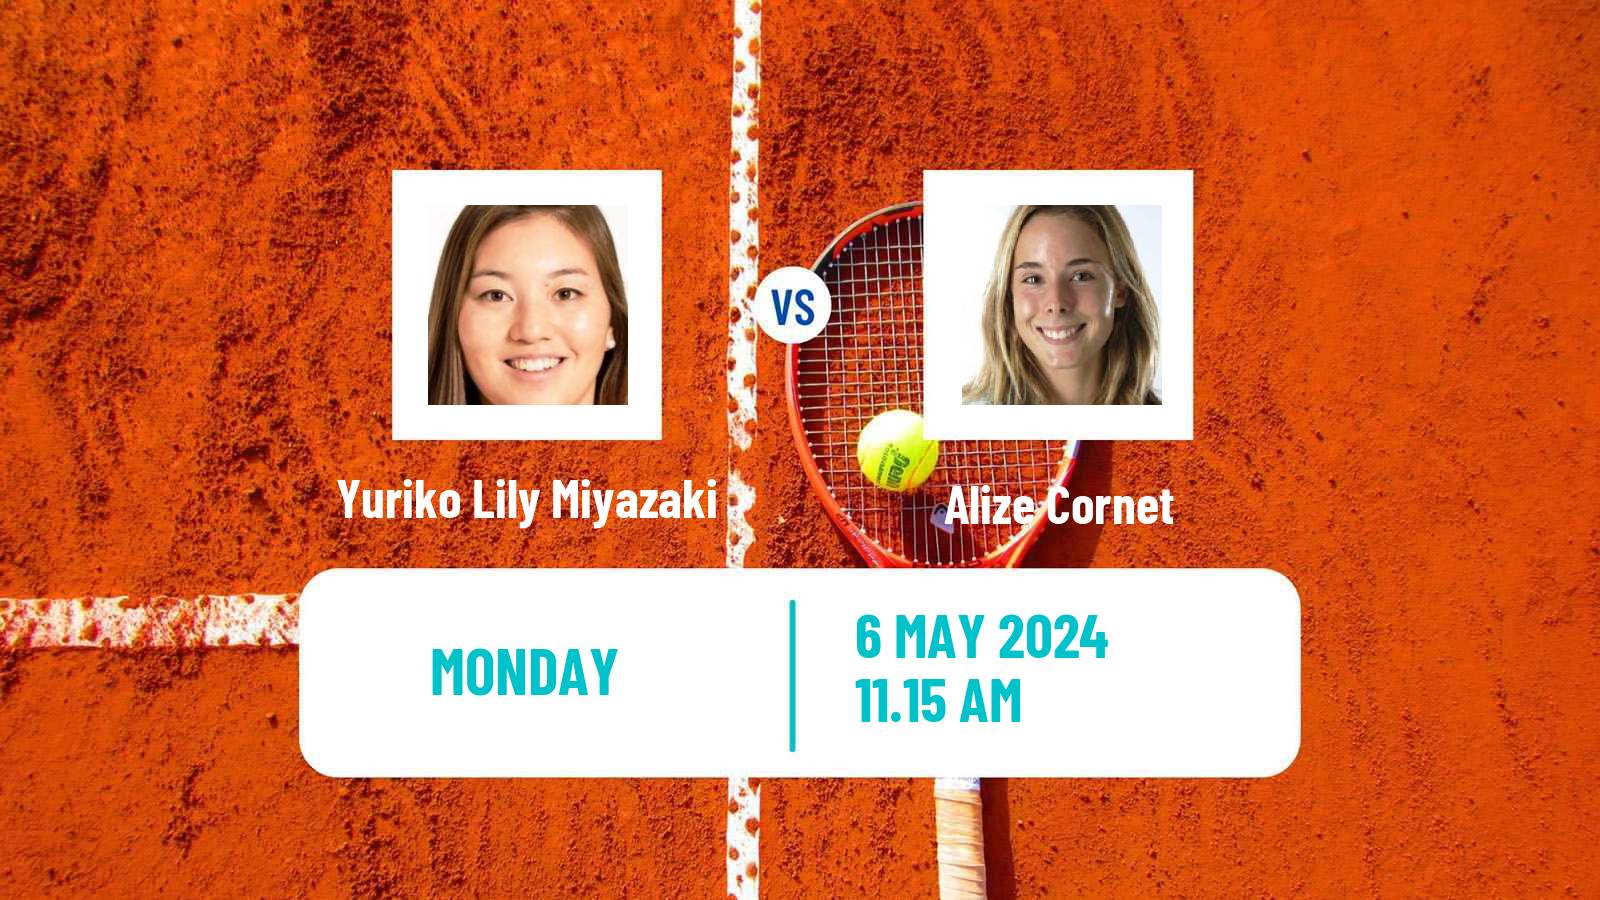 Tennis WTA Roma Yuriko Lily Miyazaki - Alize Cornet